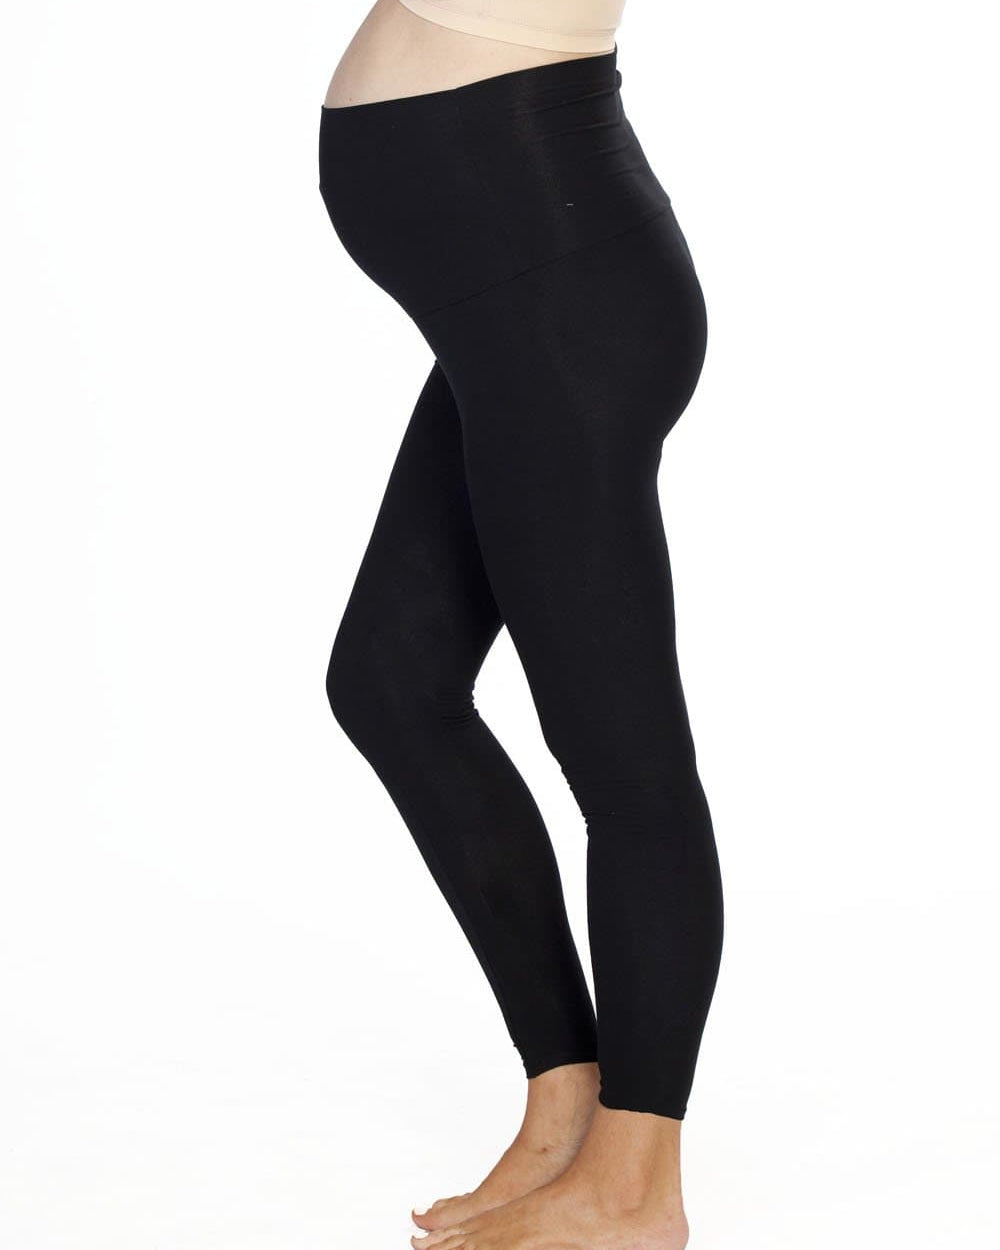 A model in 2 pack black maternity foldable waist leggings, leftside (4506713227367)